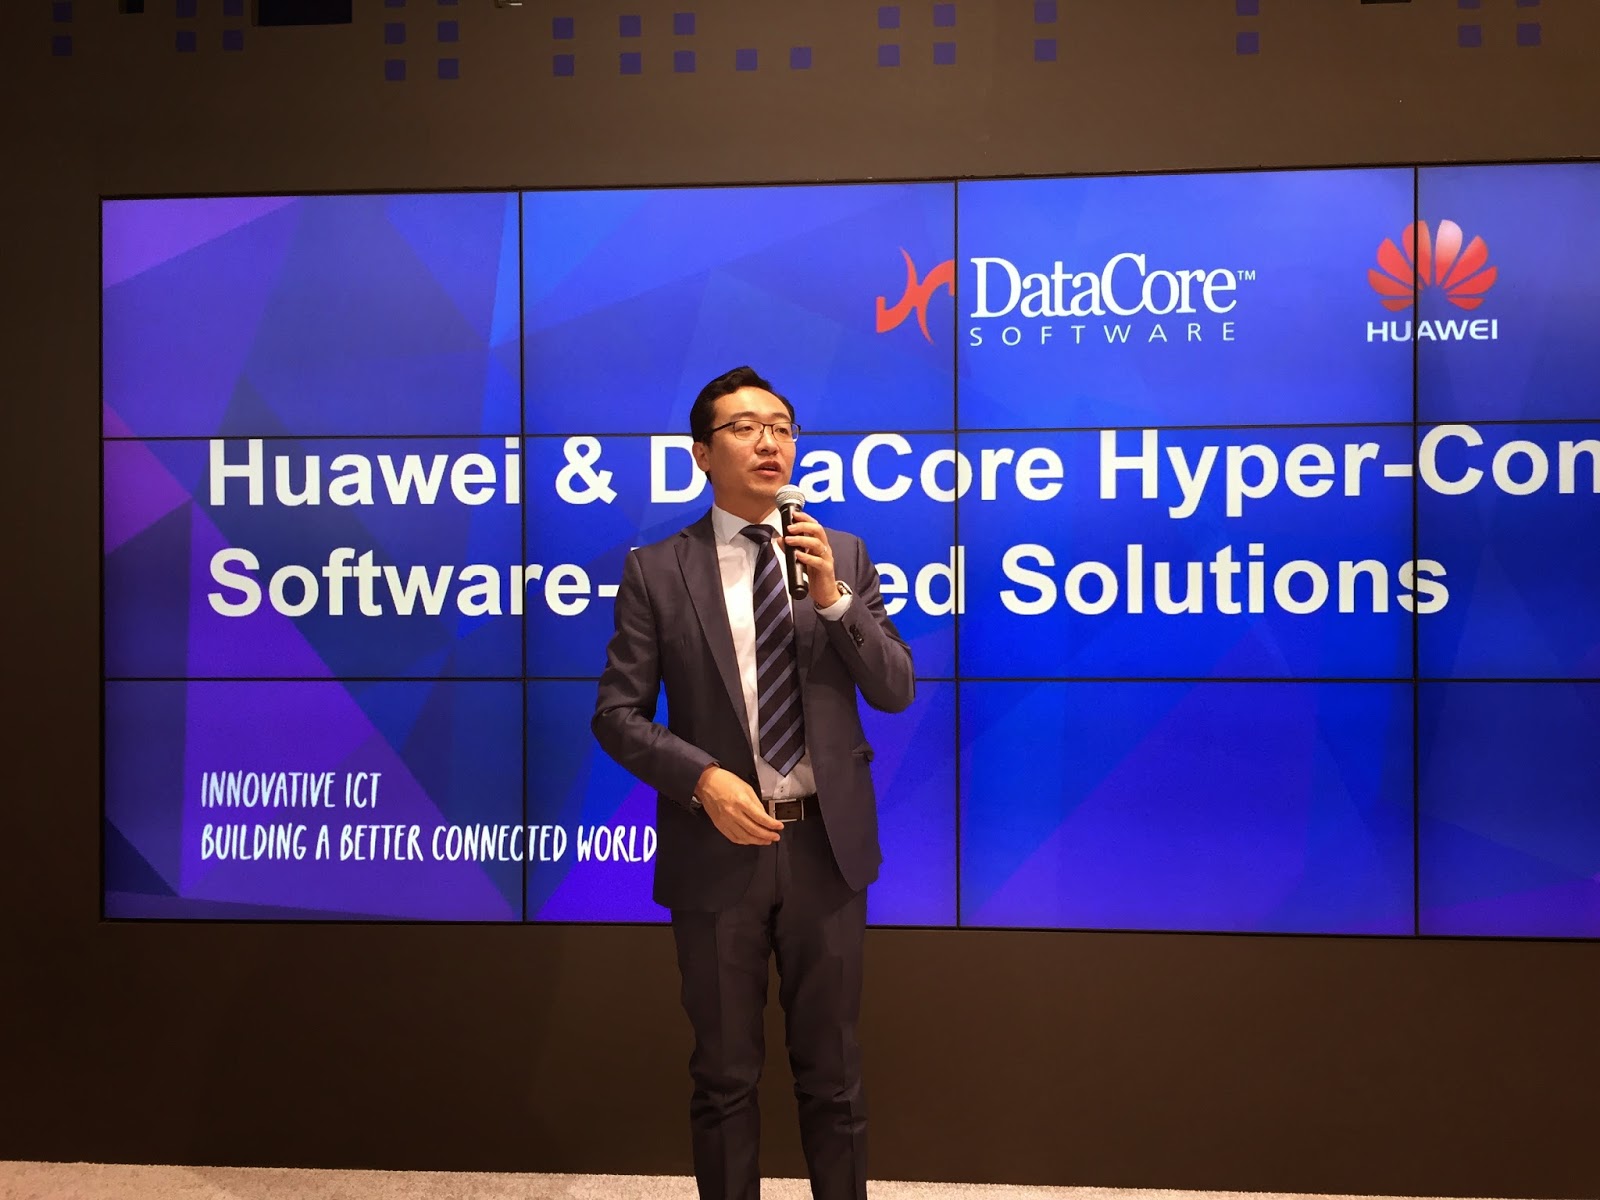 Cebit : Huawei und DataCore beschließen weltweite Partnerschaft bei Software definiertem Speicher und hyper konvergenten Lösungen